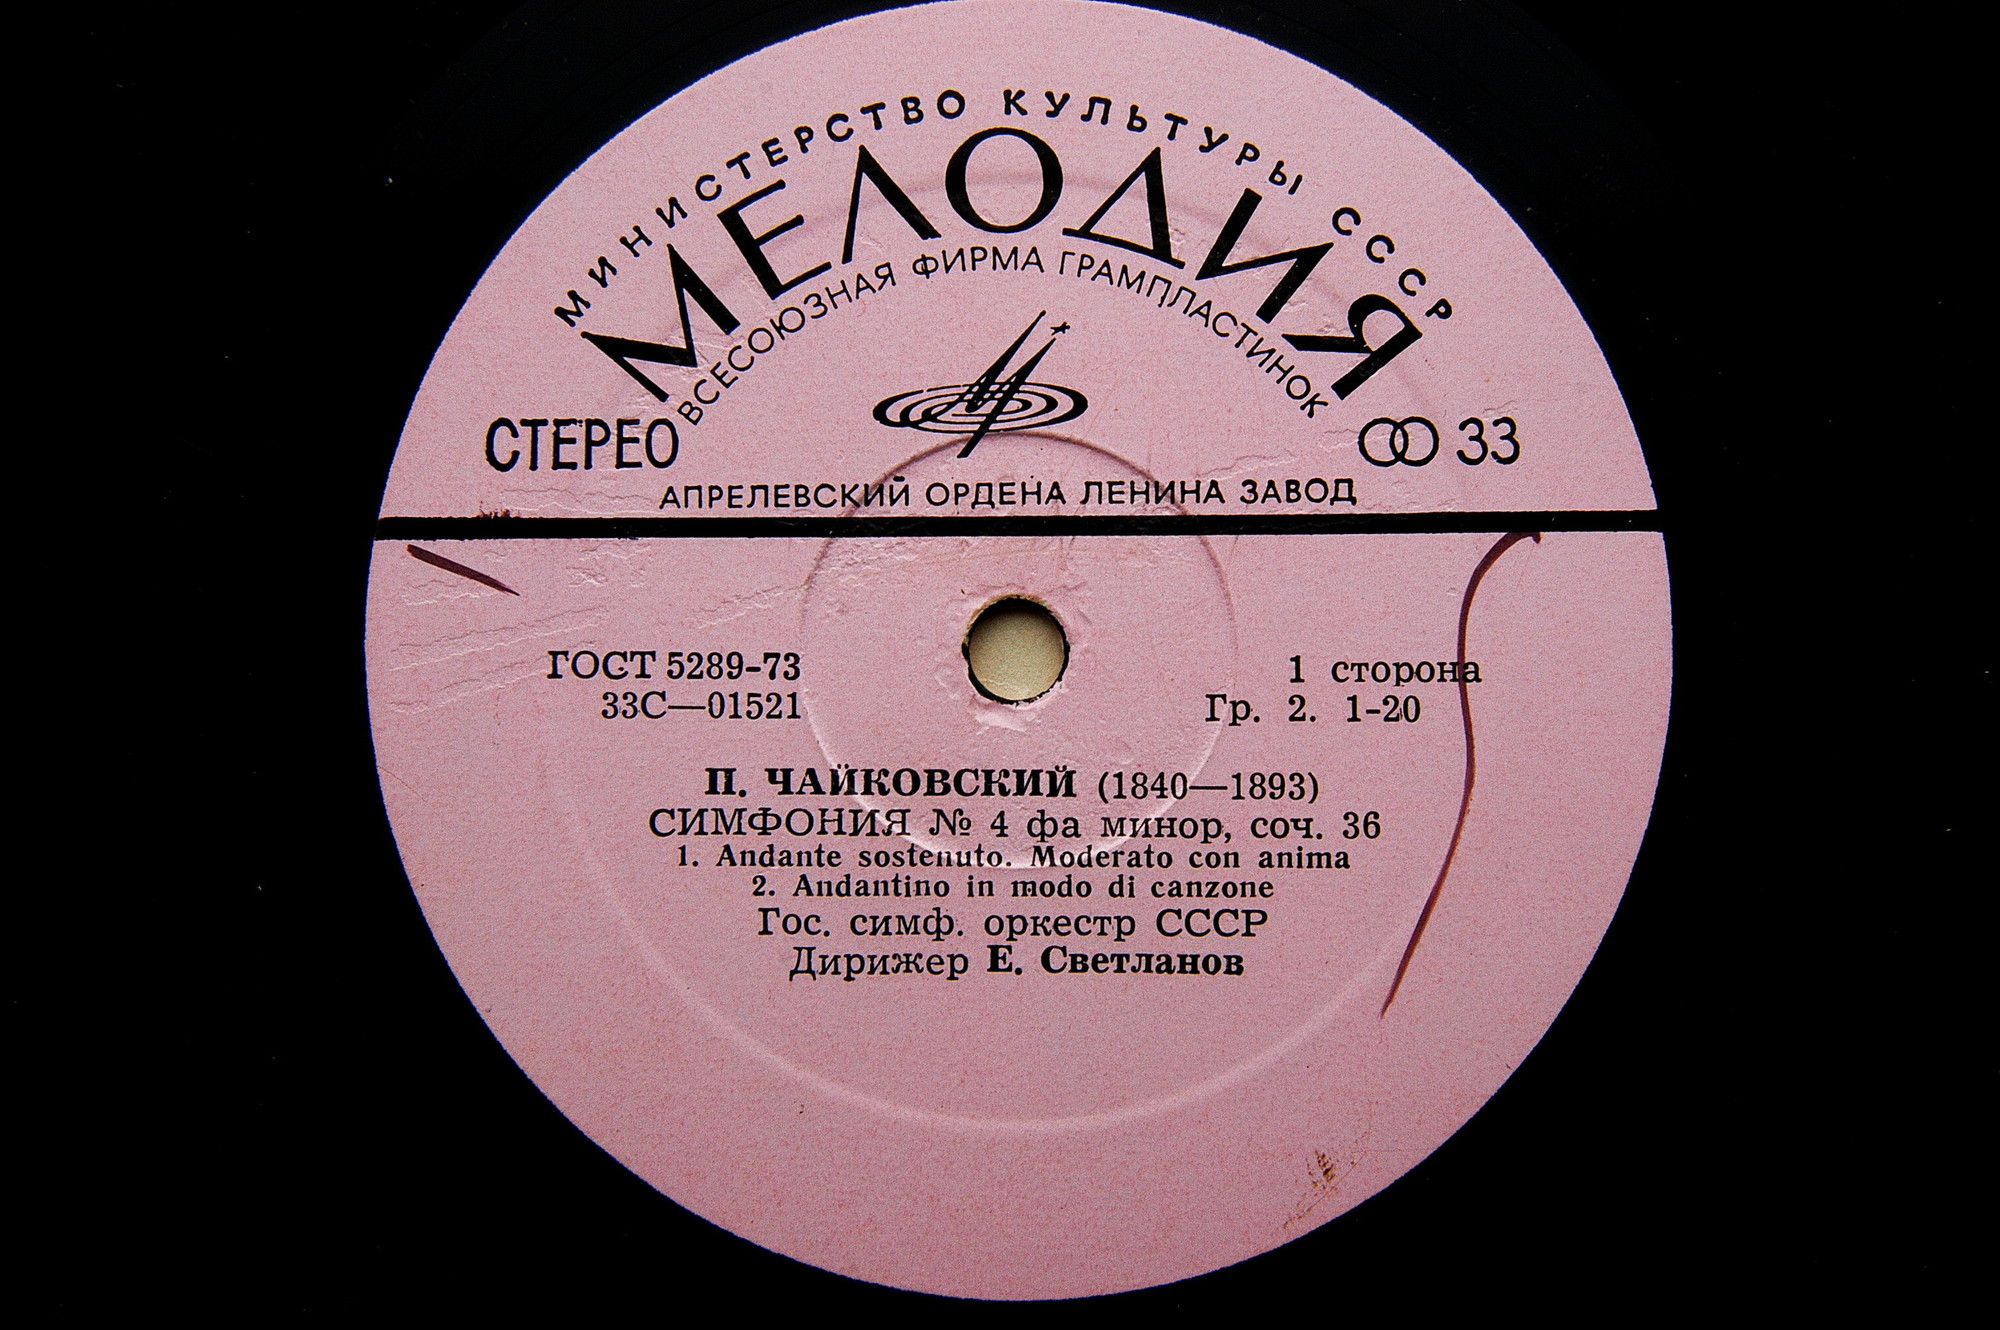 П. Чайковский: Симфония № 4 фа минор, соч. 36 (ГСО СССР, Е. Светланов)